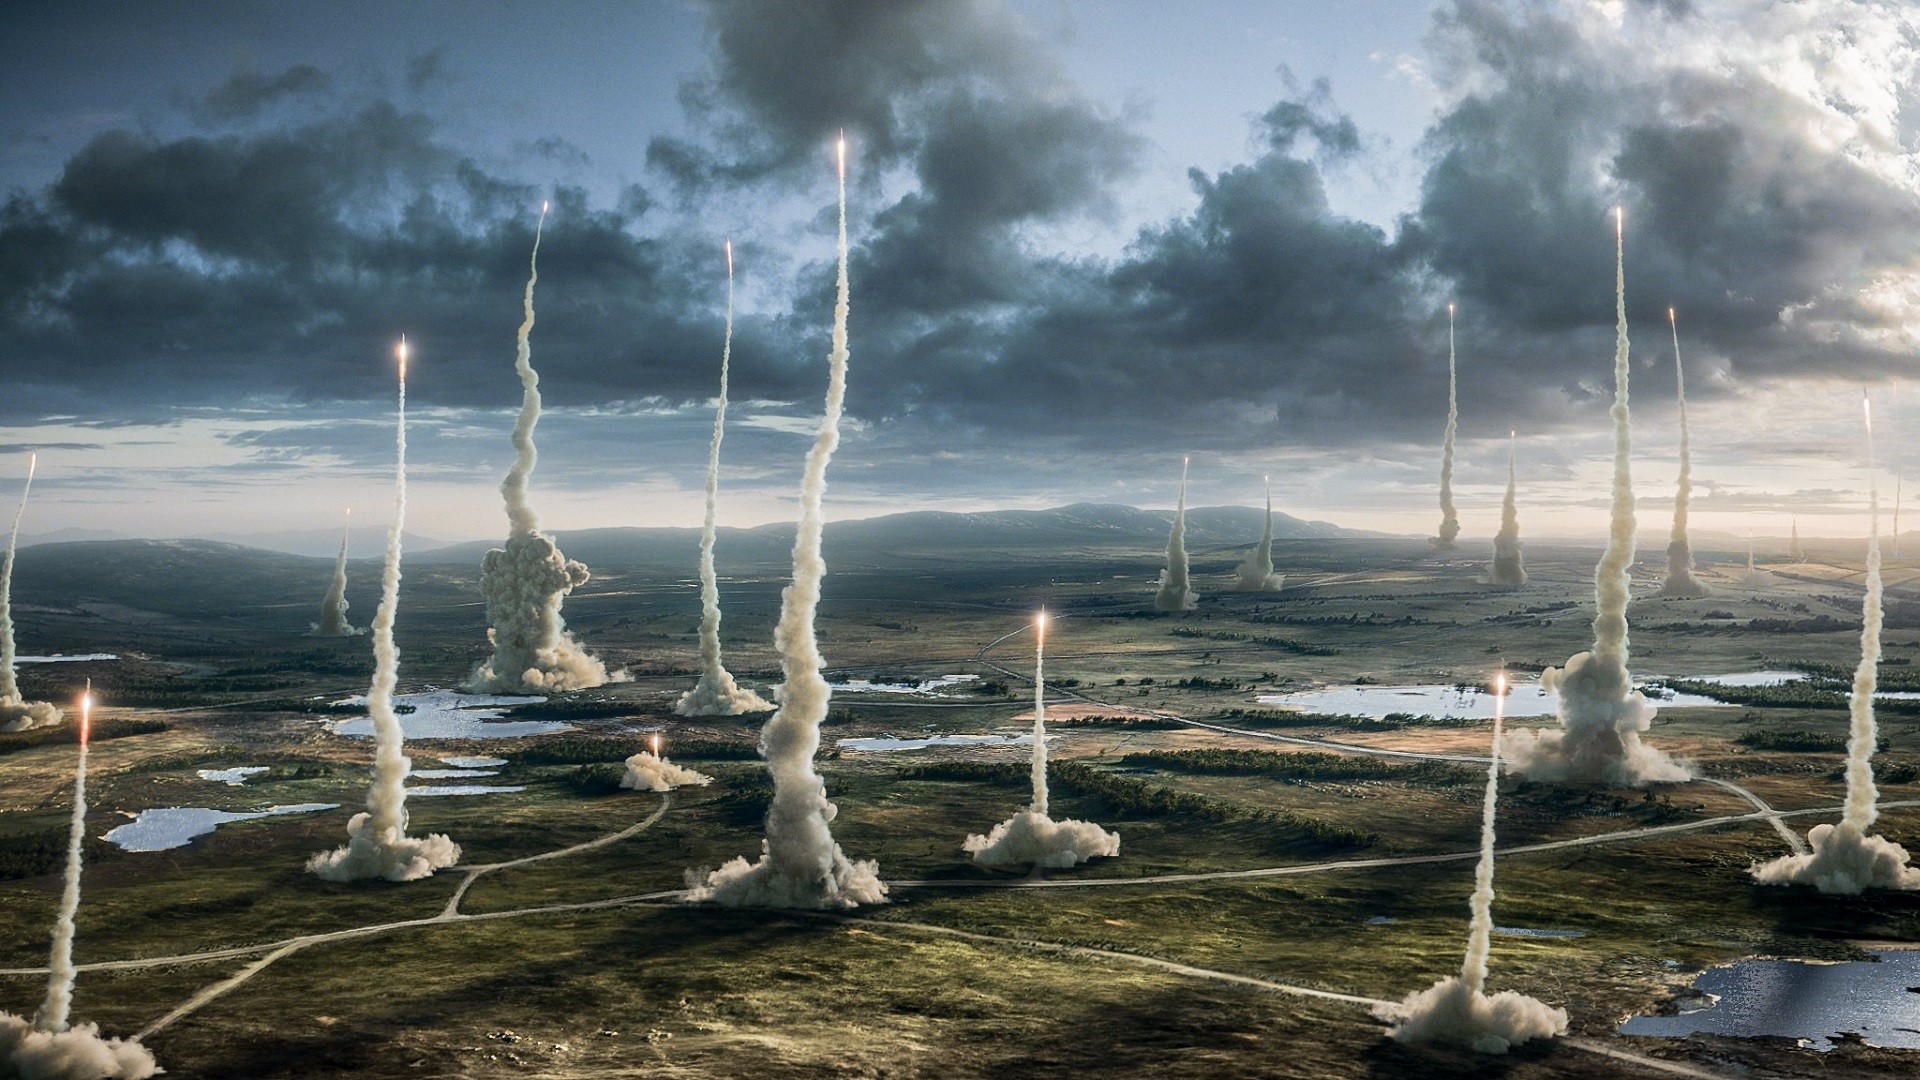 General 1920x1080 x-men: apocalypse landscape rocket movies movie scenes